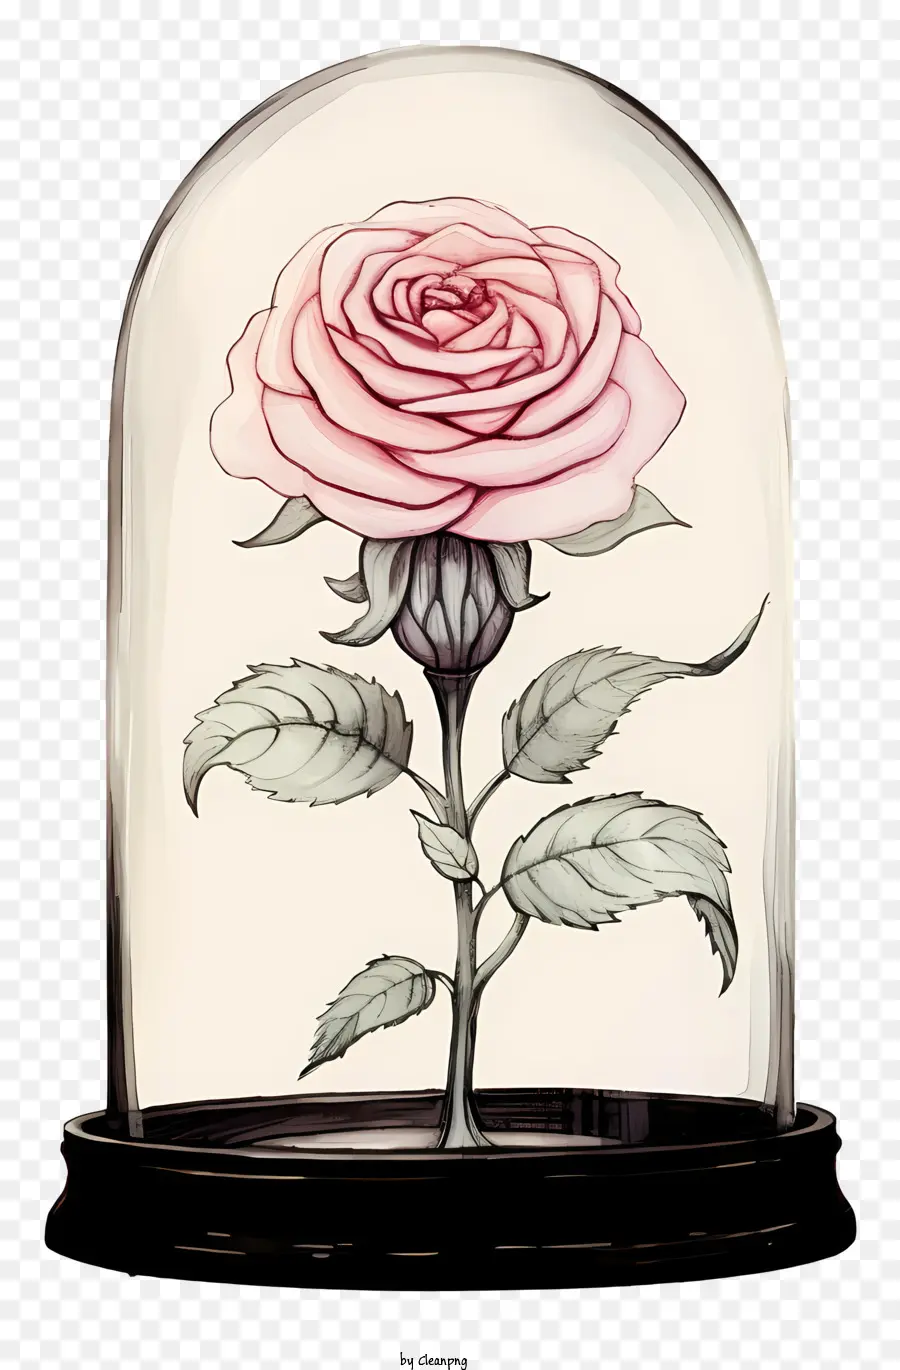 rosa - Rosa spinosa rosa in cupola di vetro trasparente